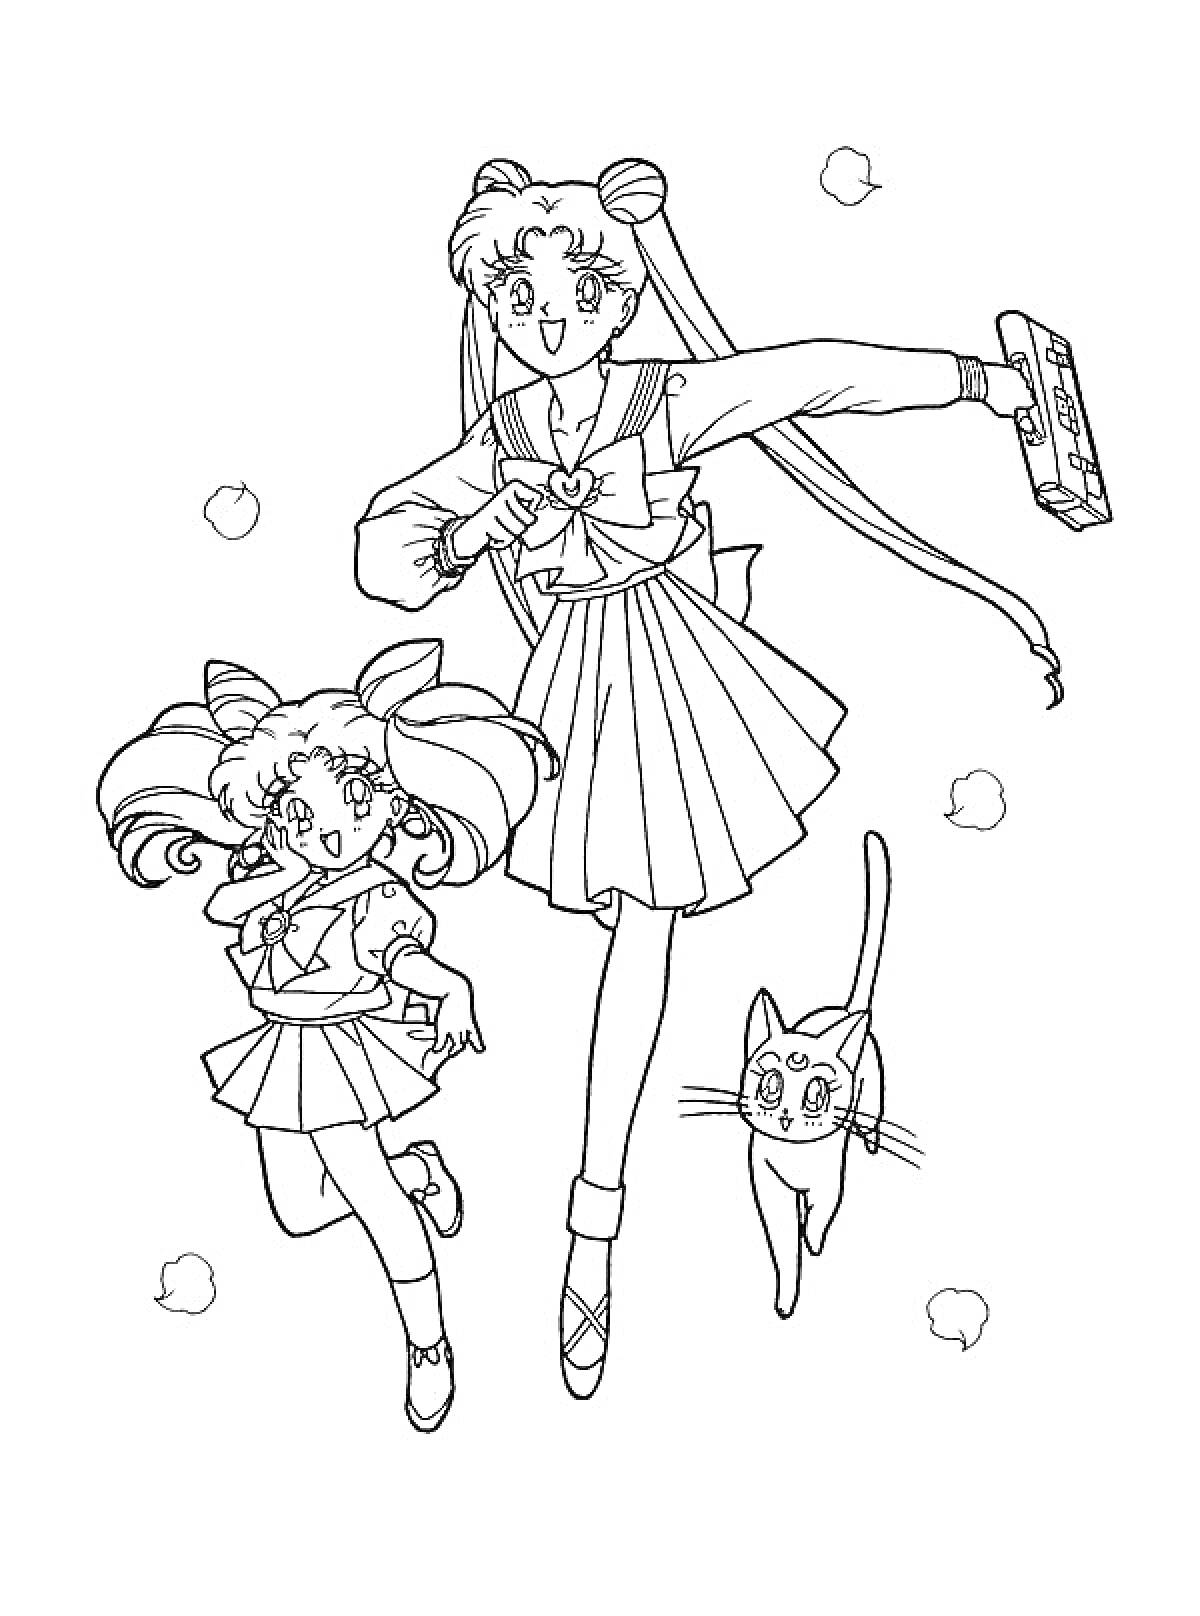 Девочка в школьной форме с волшебной палочкой, девочка в школьной форме с поднятыми руками, кошка, облака